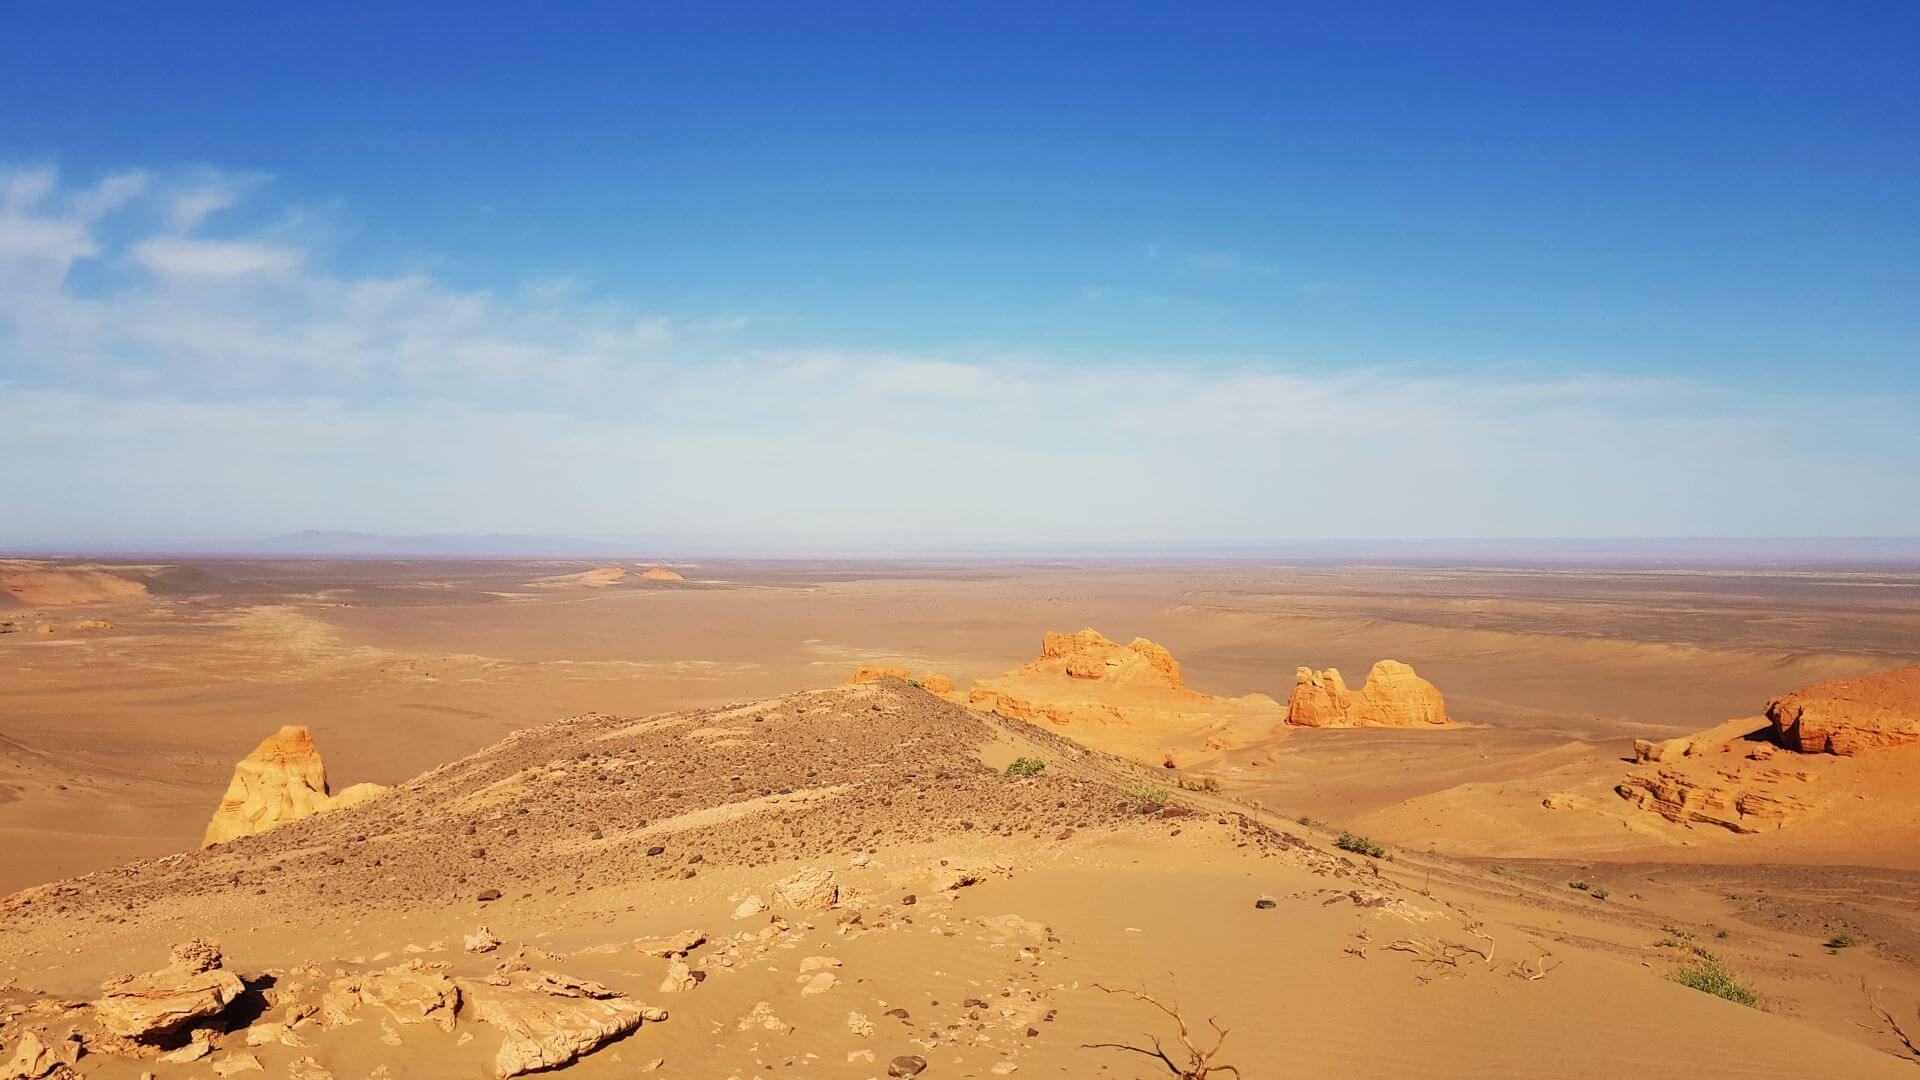 Gobi Desert, Mongolian photography, Captivating images, Desert treasures, 1920x1080 Full HD Desktop